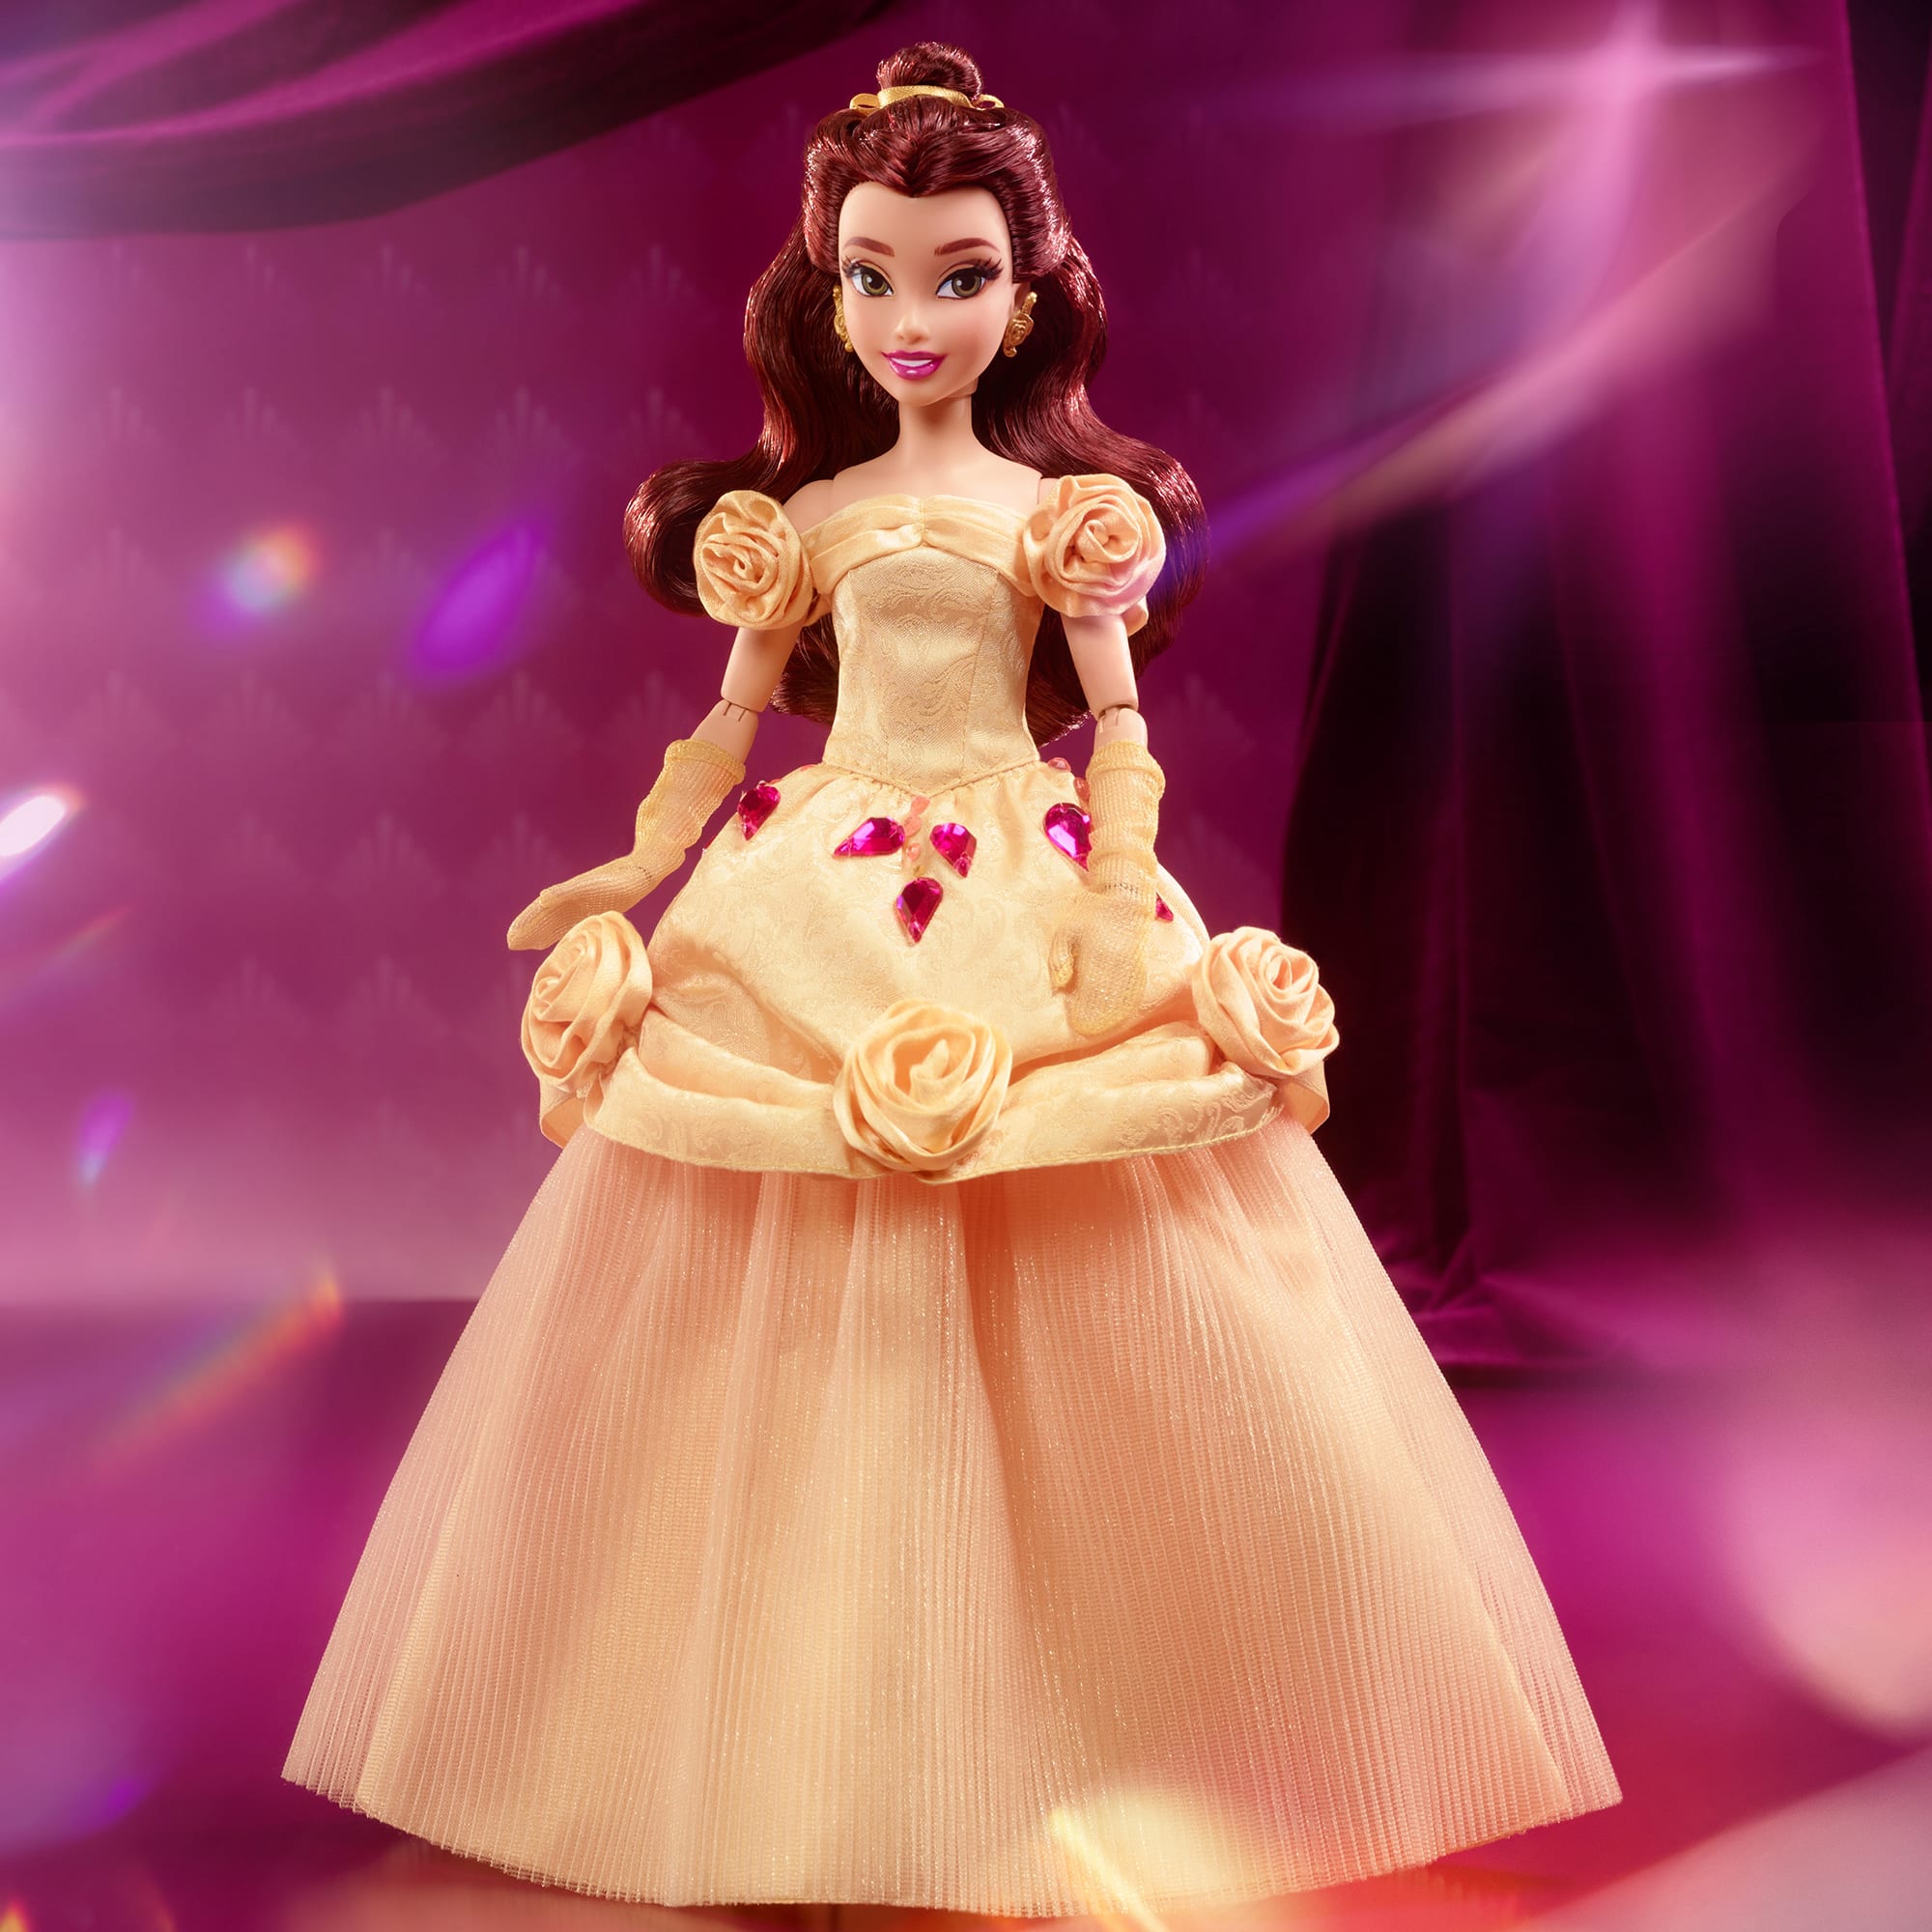 Official Disney Princess Collectibles